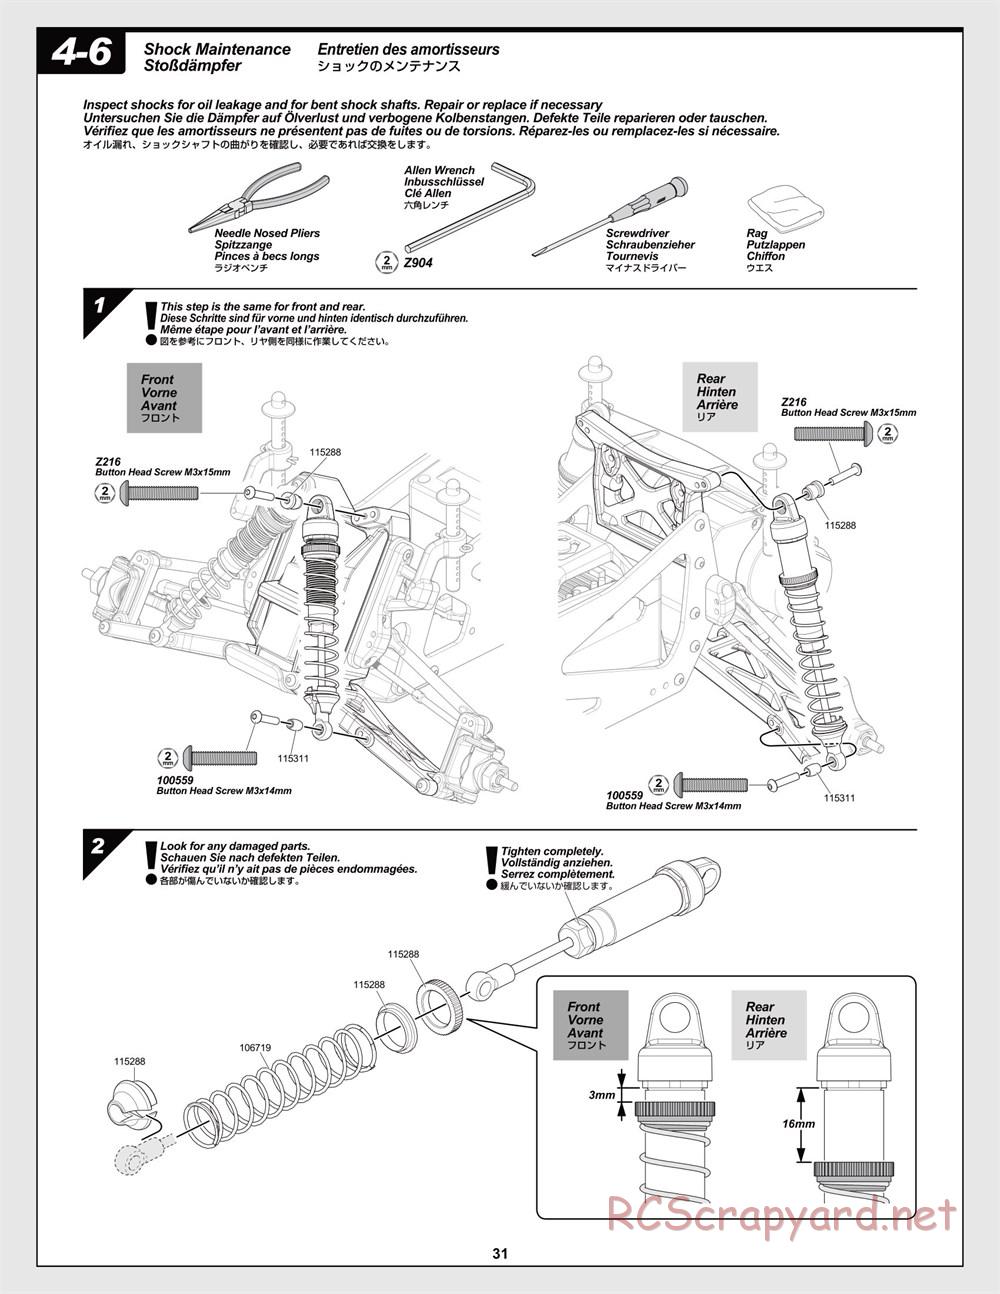 HPI - Jumpshot MT V2 - Manual - Page 31